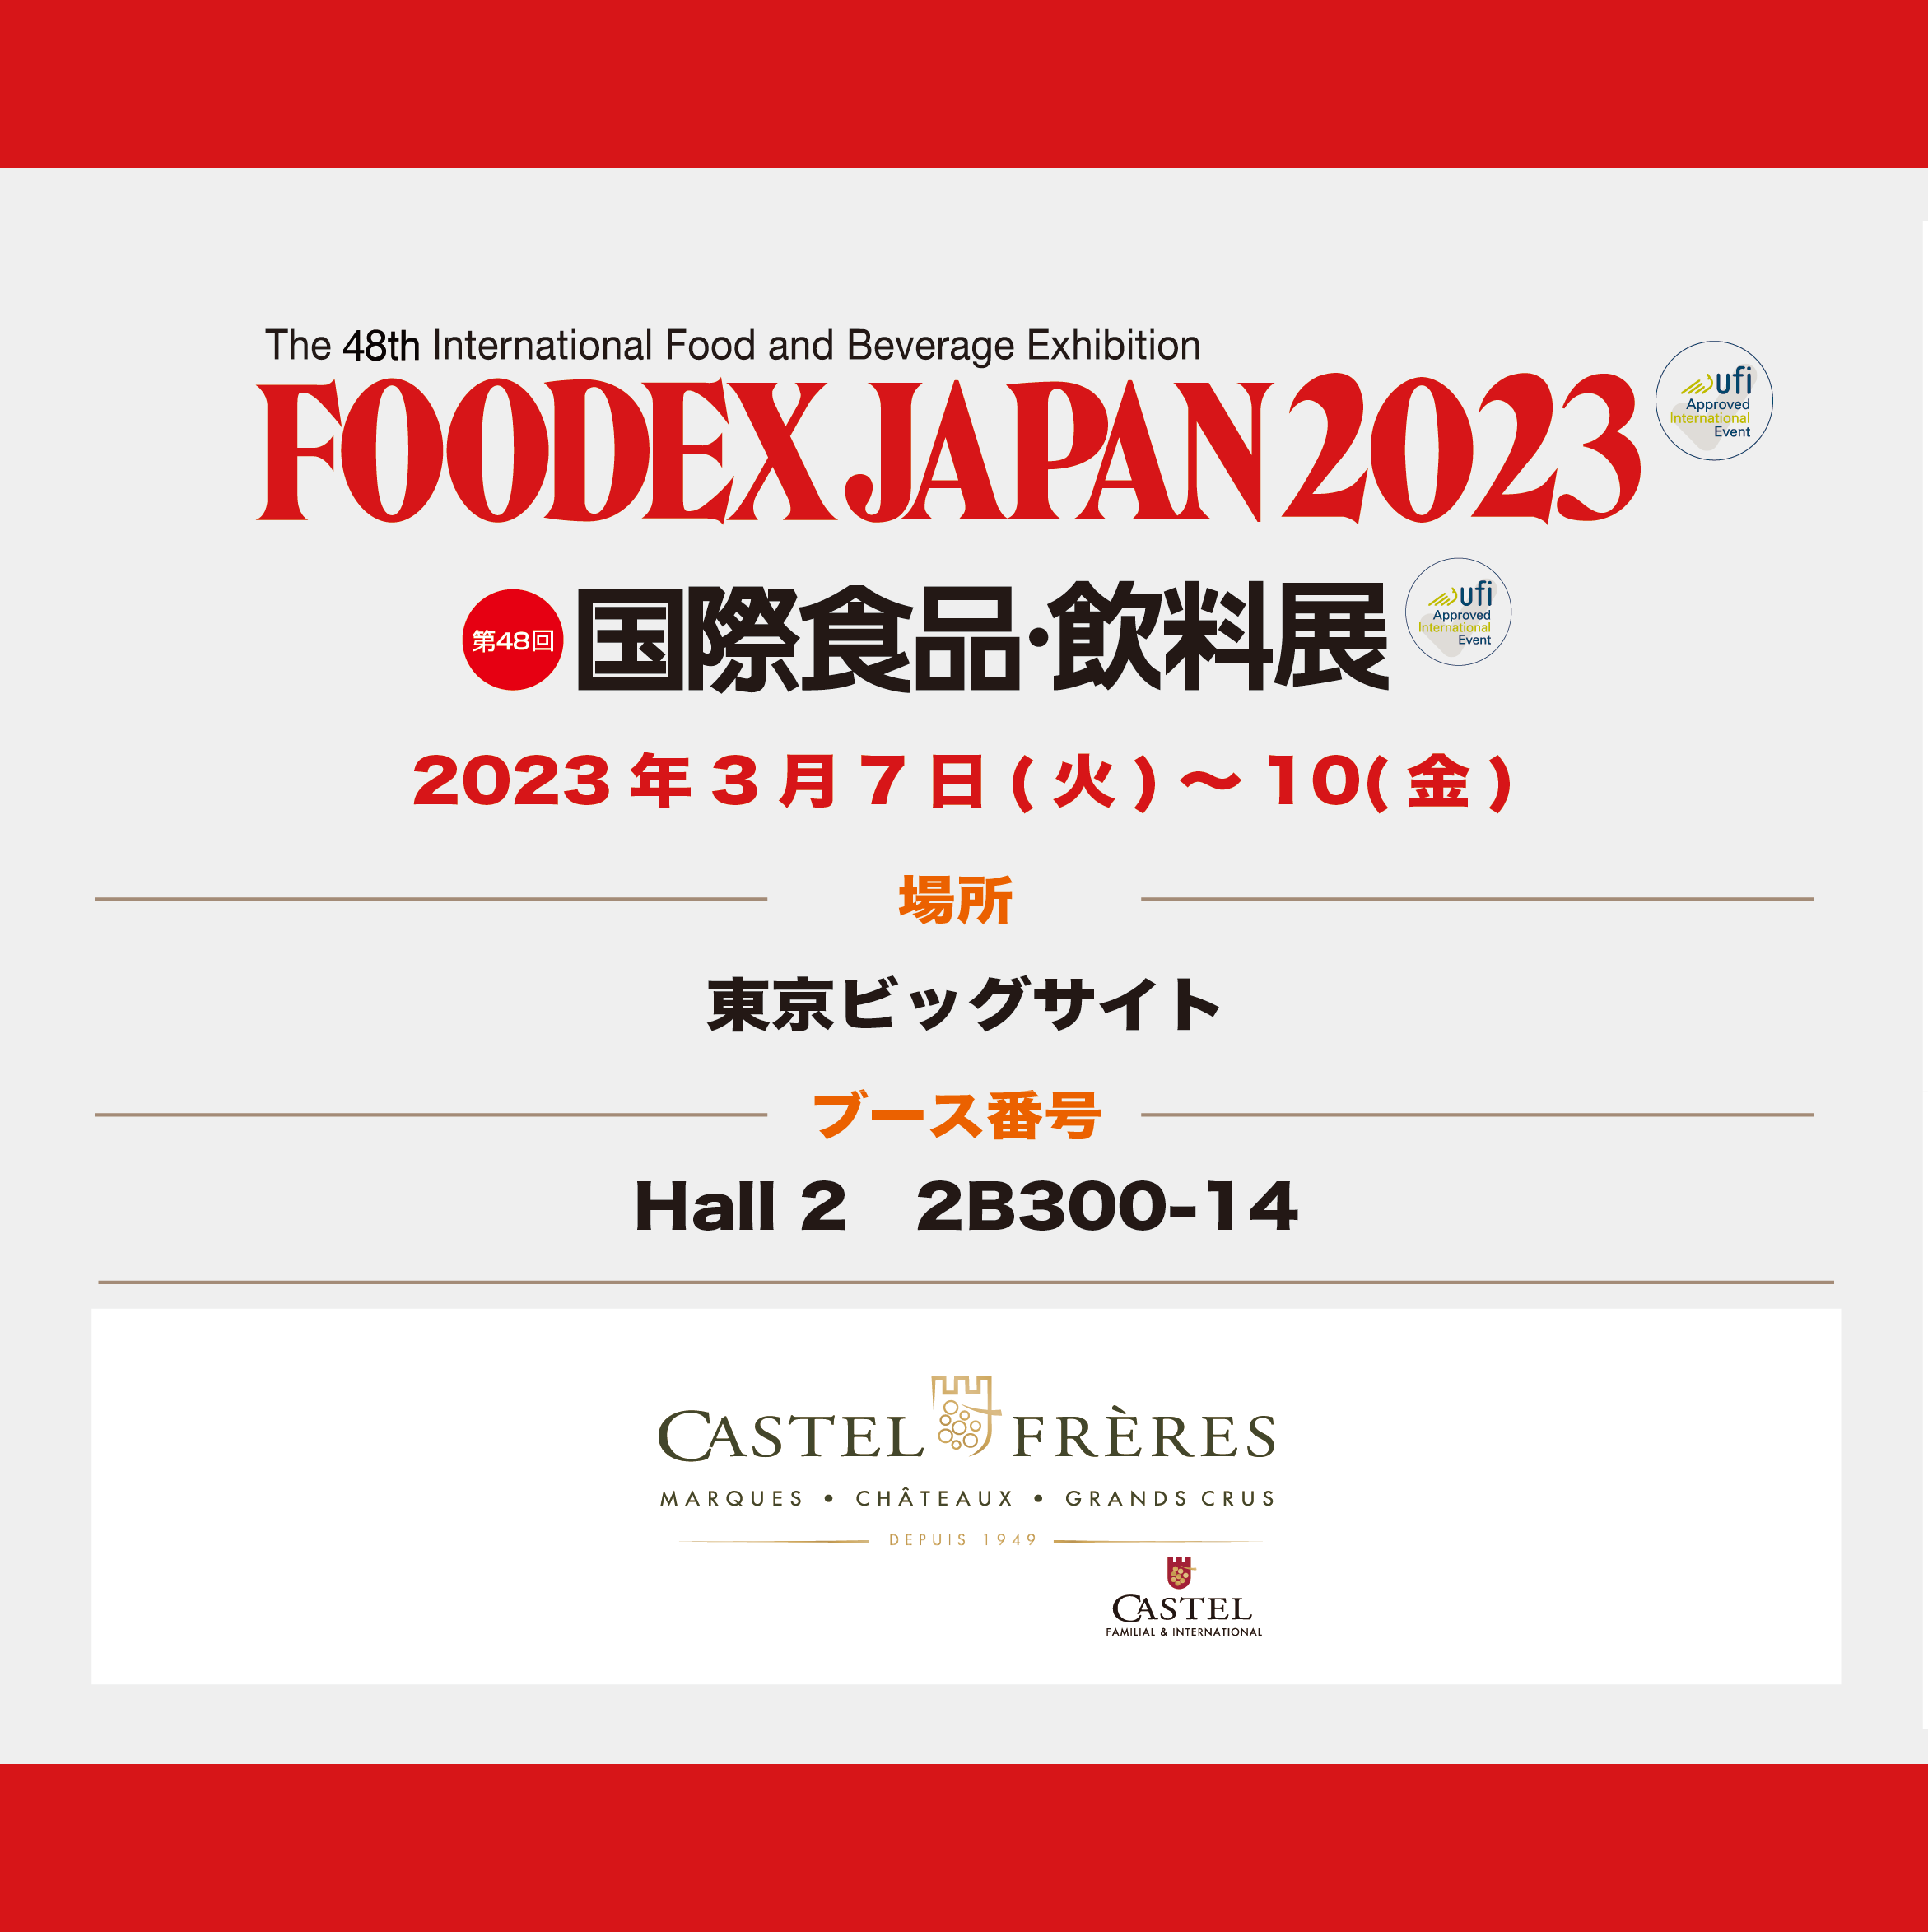 カステルフレールはFOODEX JAPAN 2023に出展します thumb